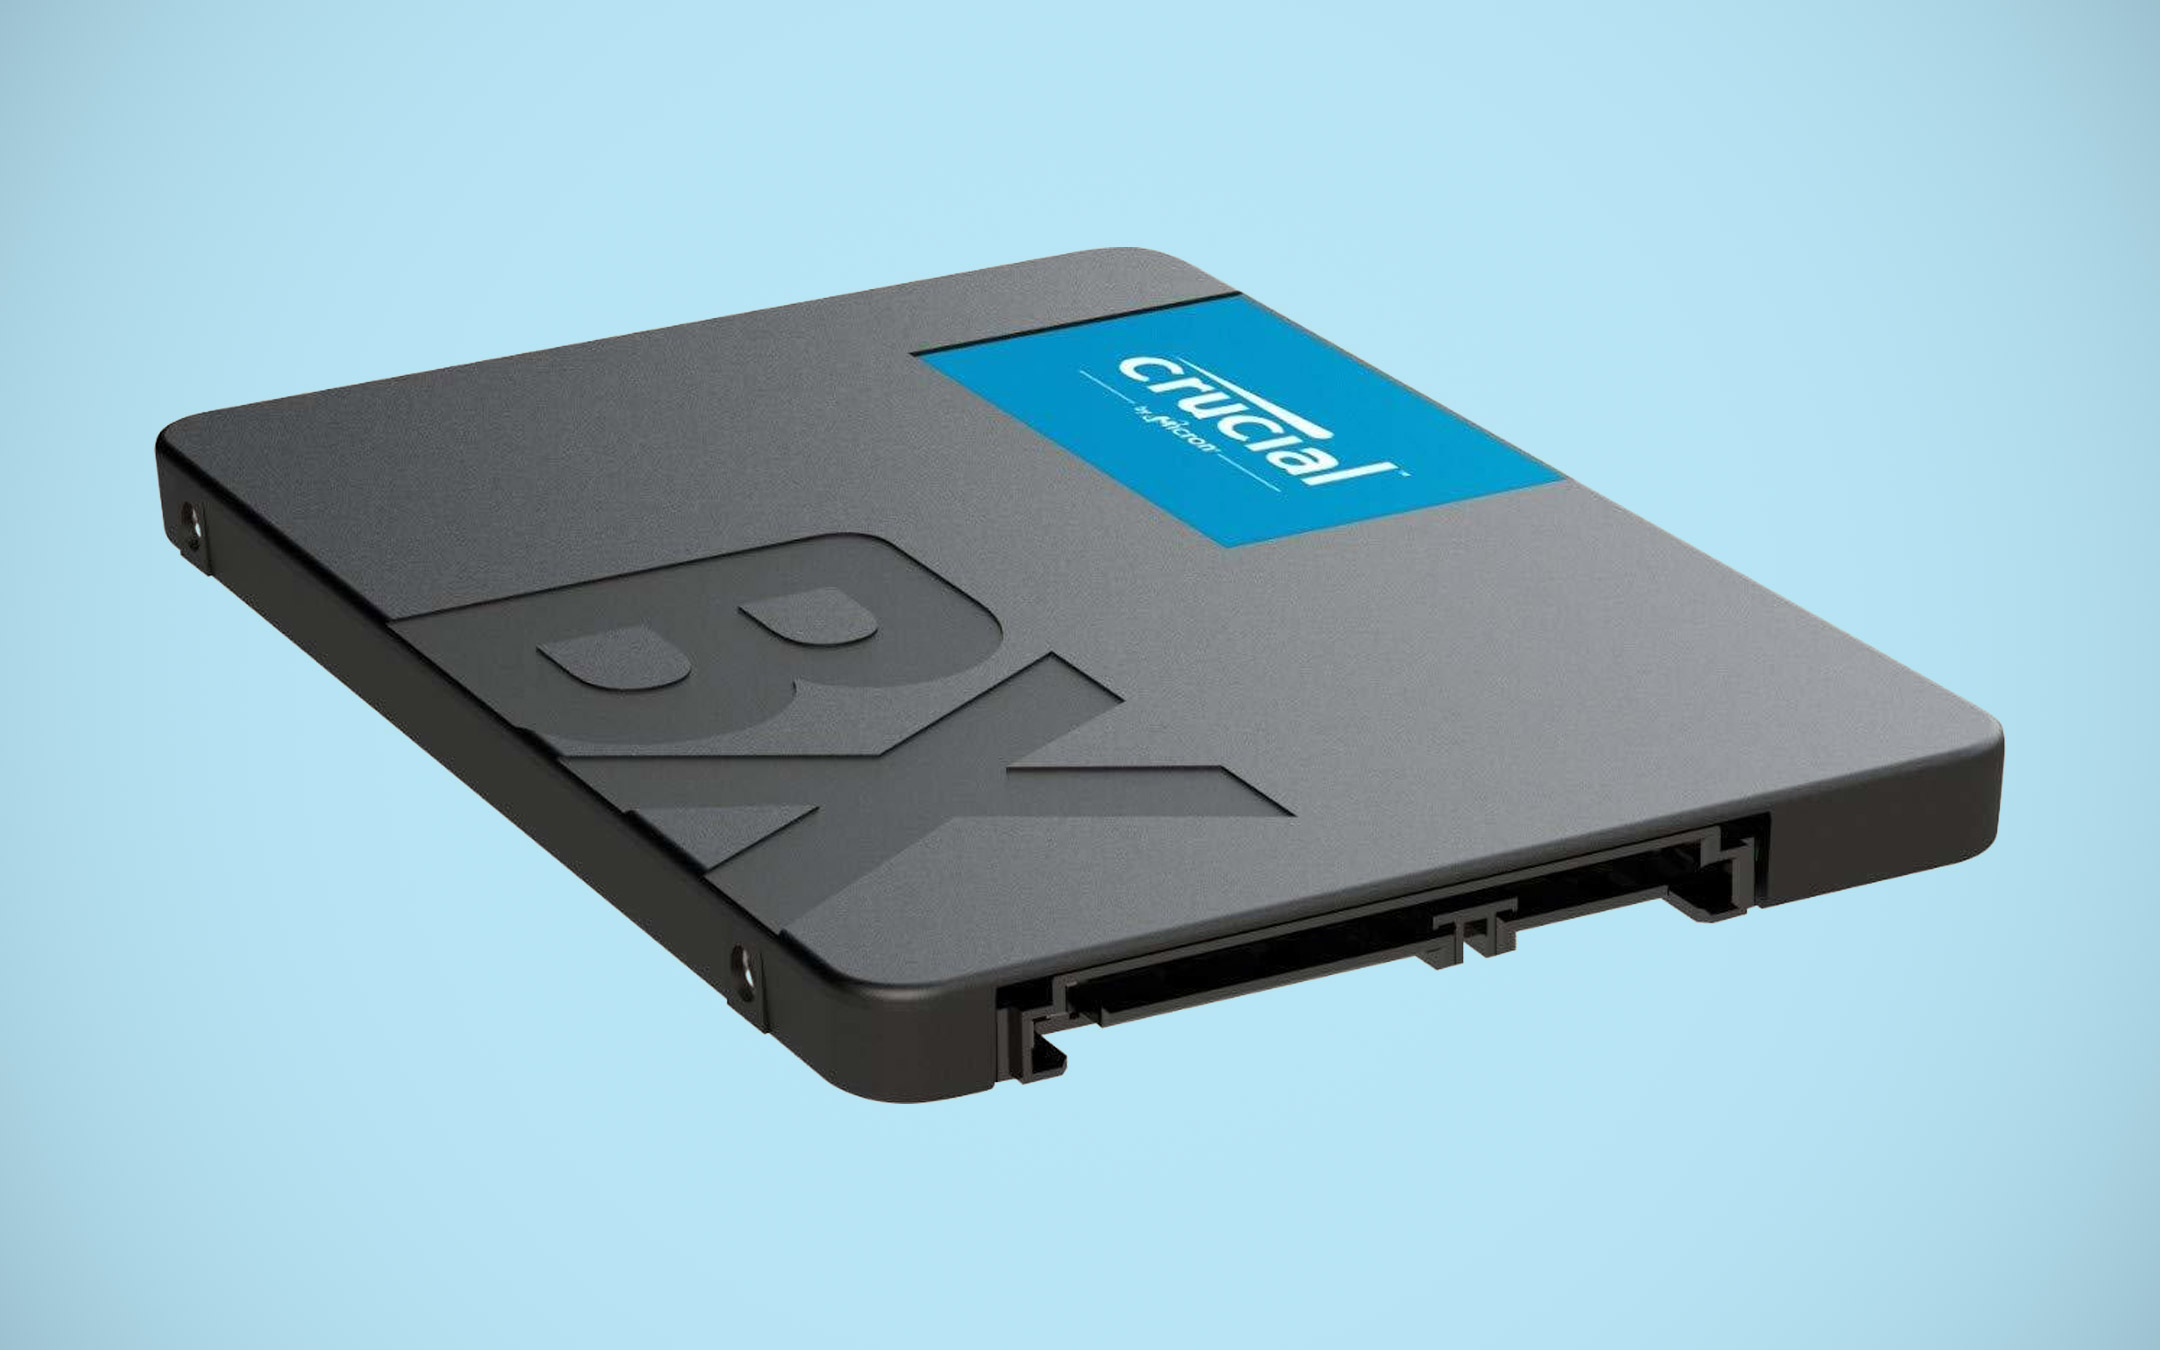 Le SSD Kingston e Crucial da 240 GB in sconto su eBay